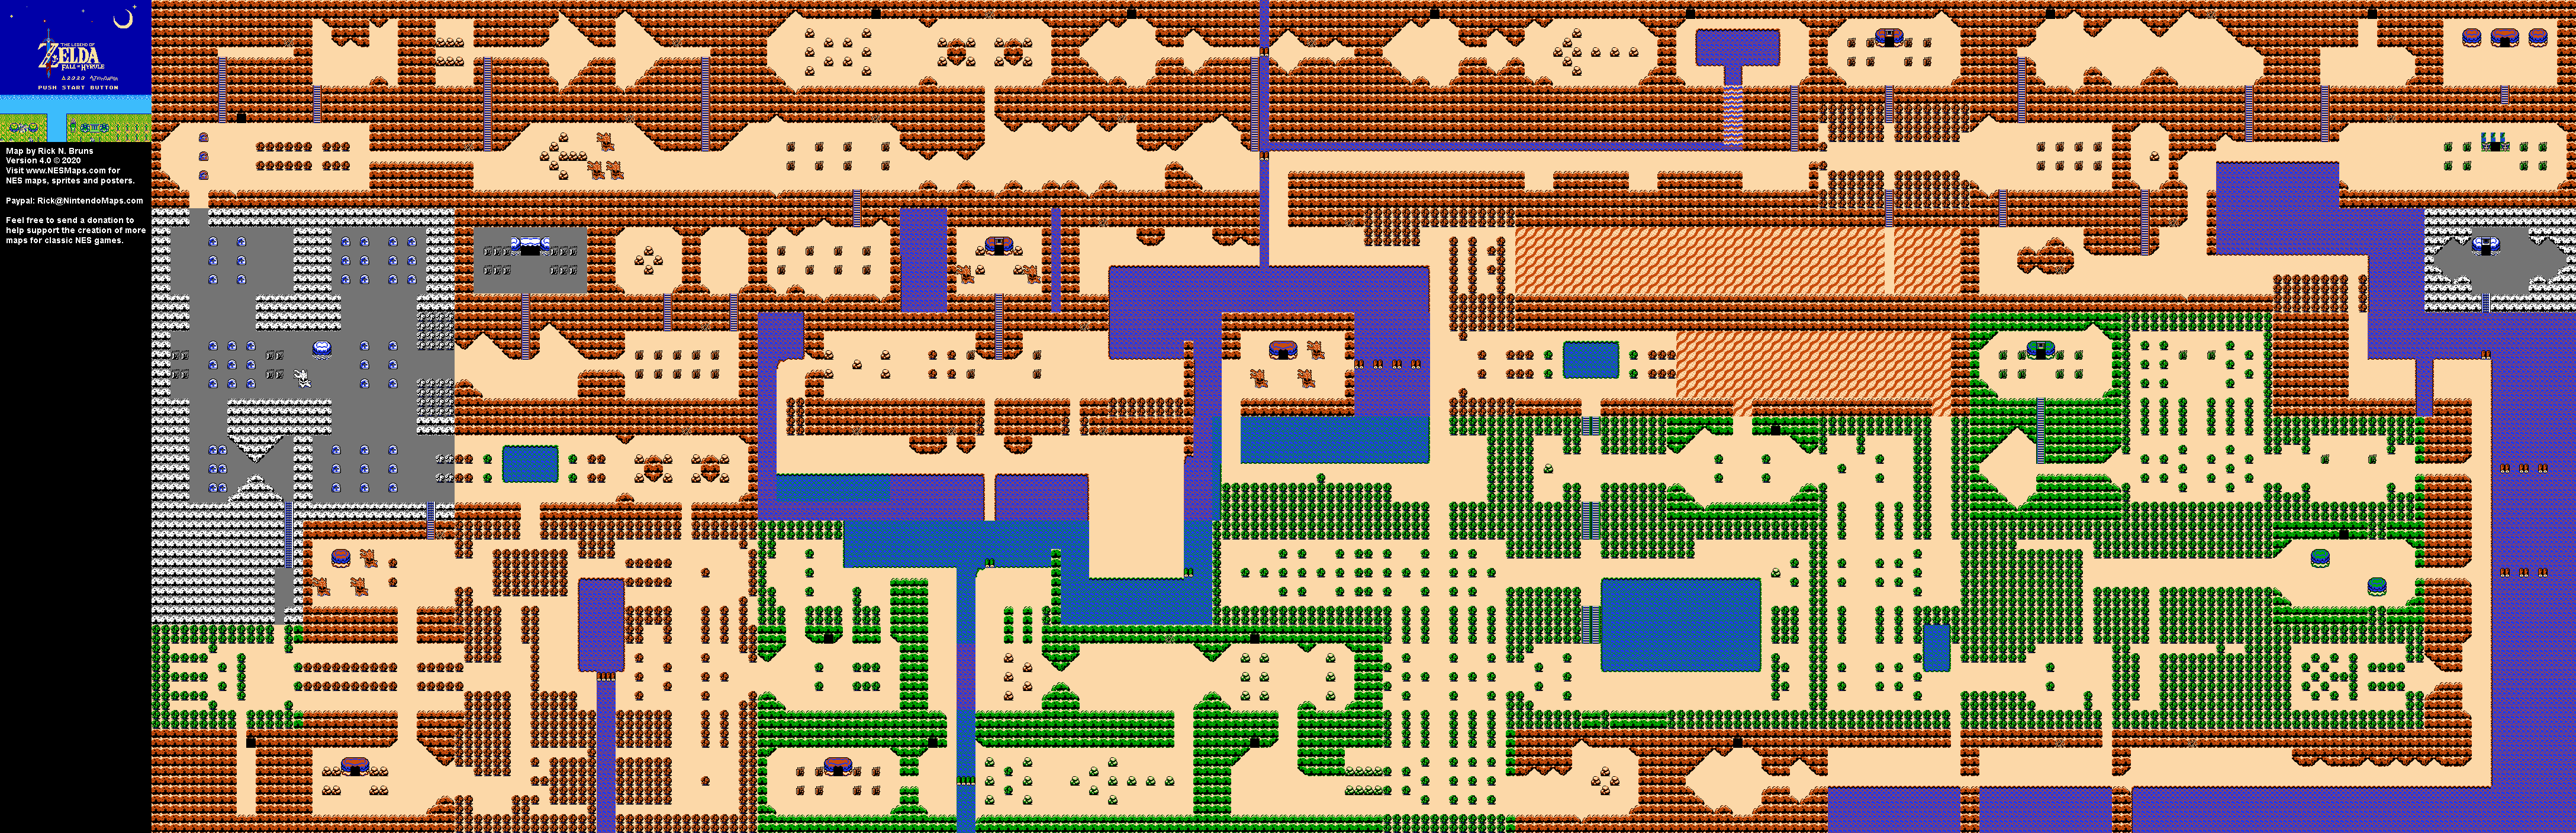 Zelda NES Overworld Map